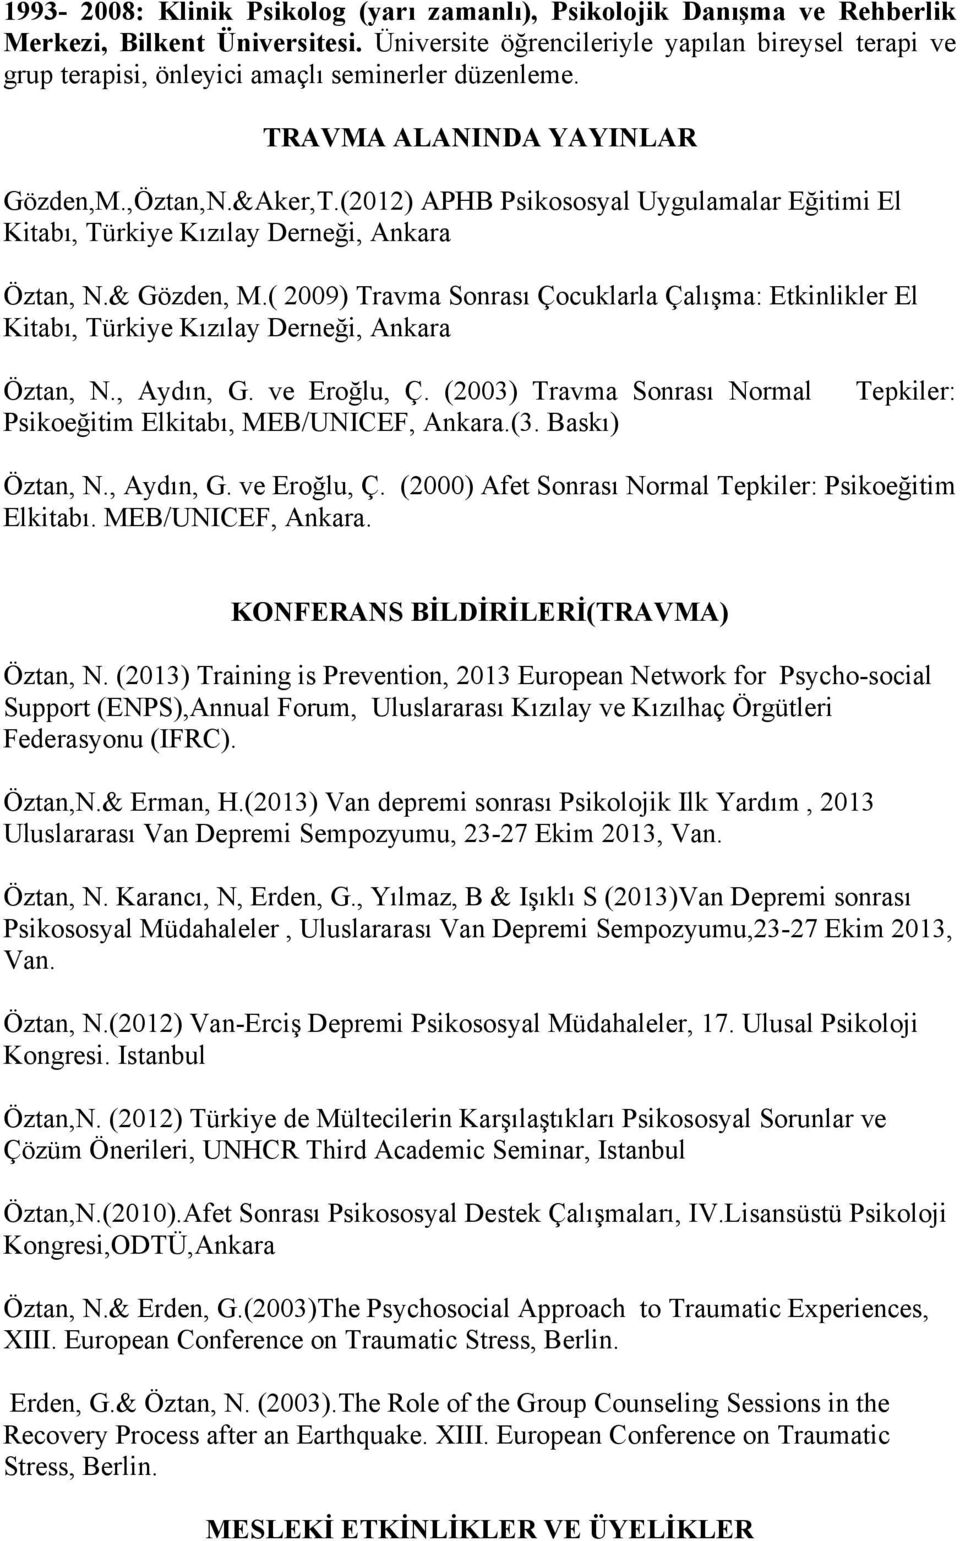 (2012) APHB Psikososyal Uygulamalar Eğitimi El Kitabı, Türkiye Kızılay Derneği, Ankara Öztan, N.& Gözden, M.